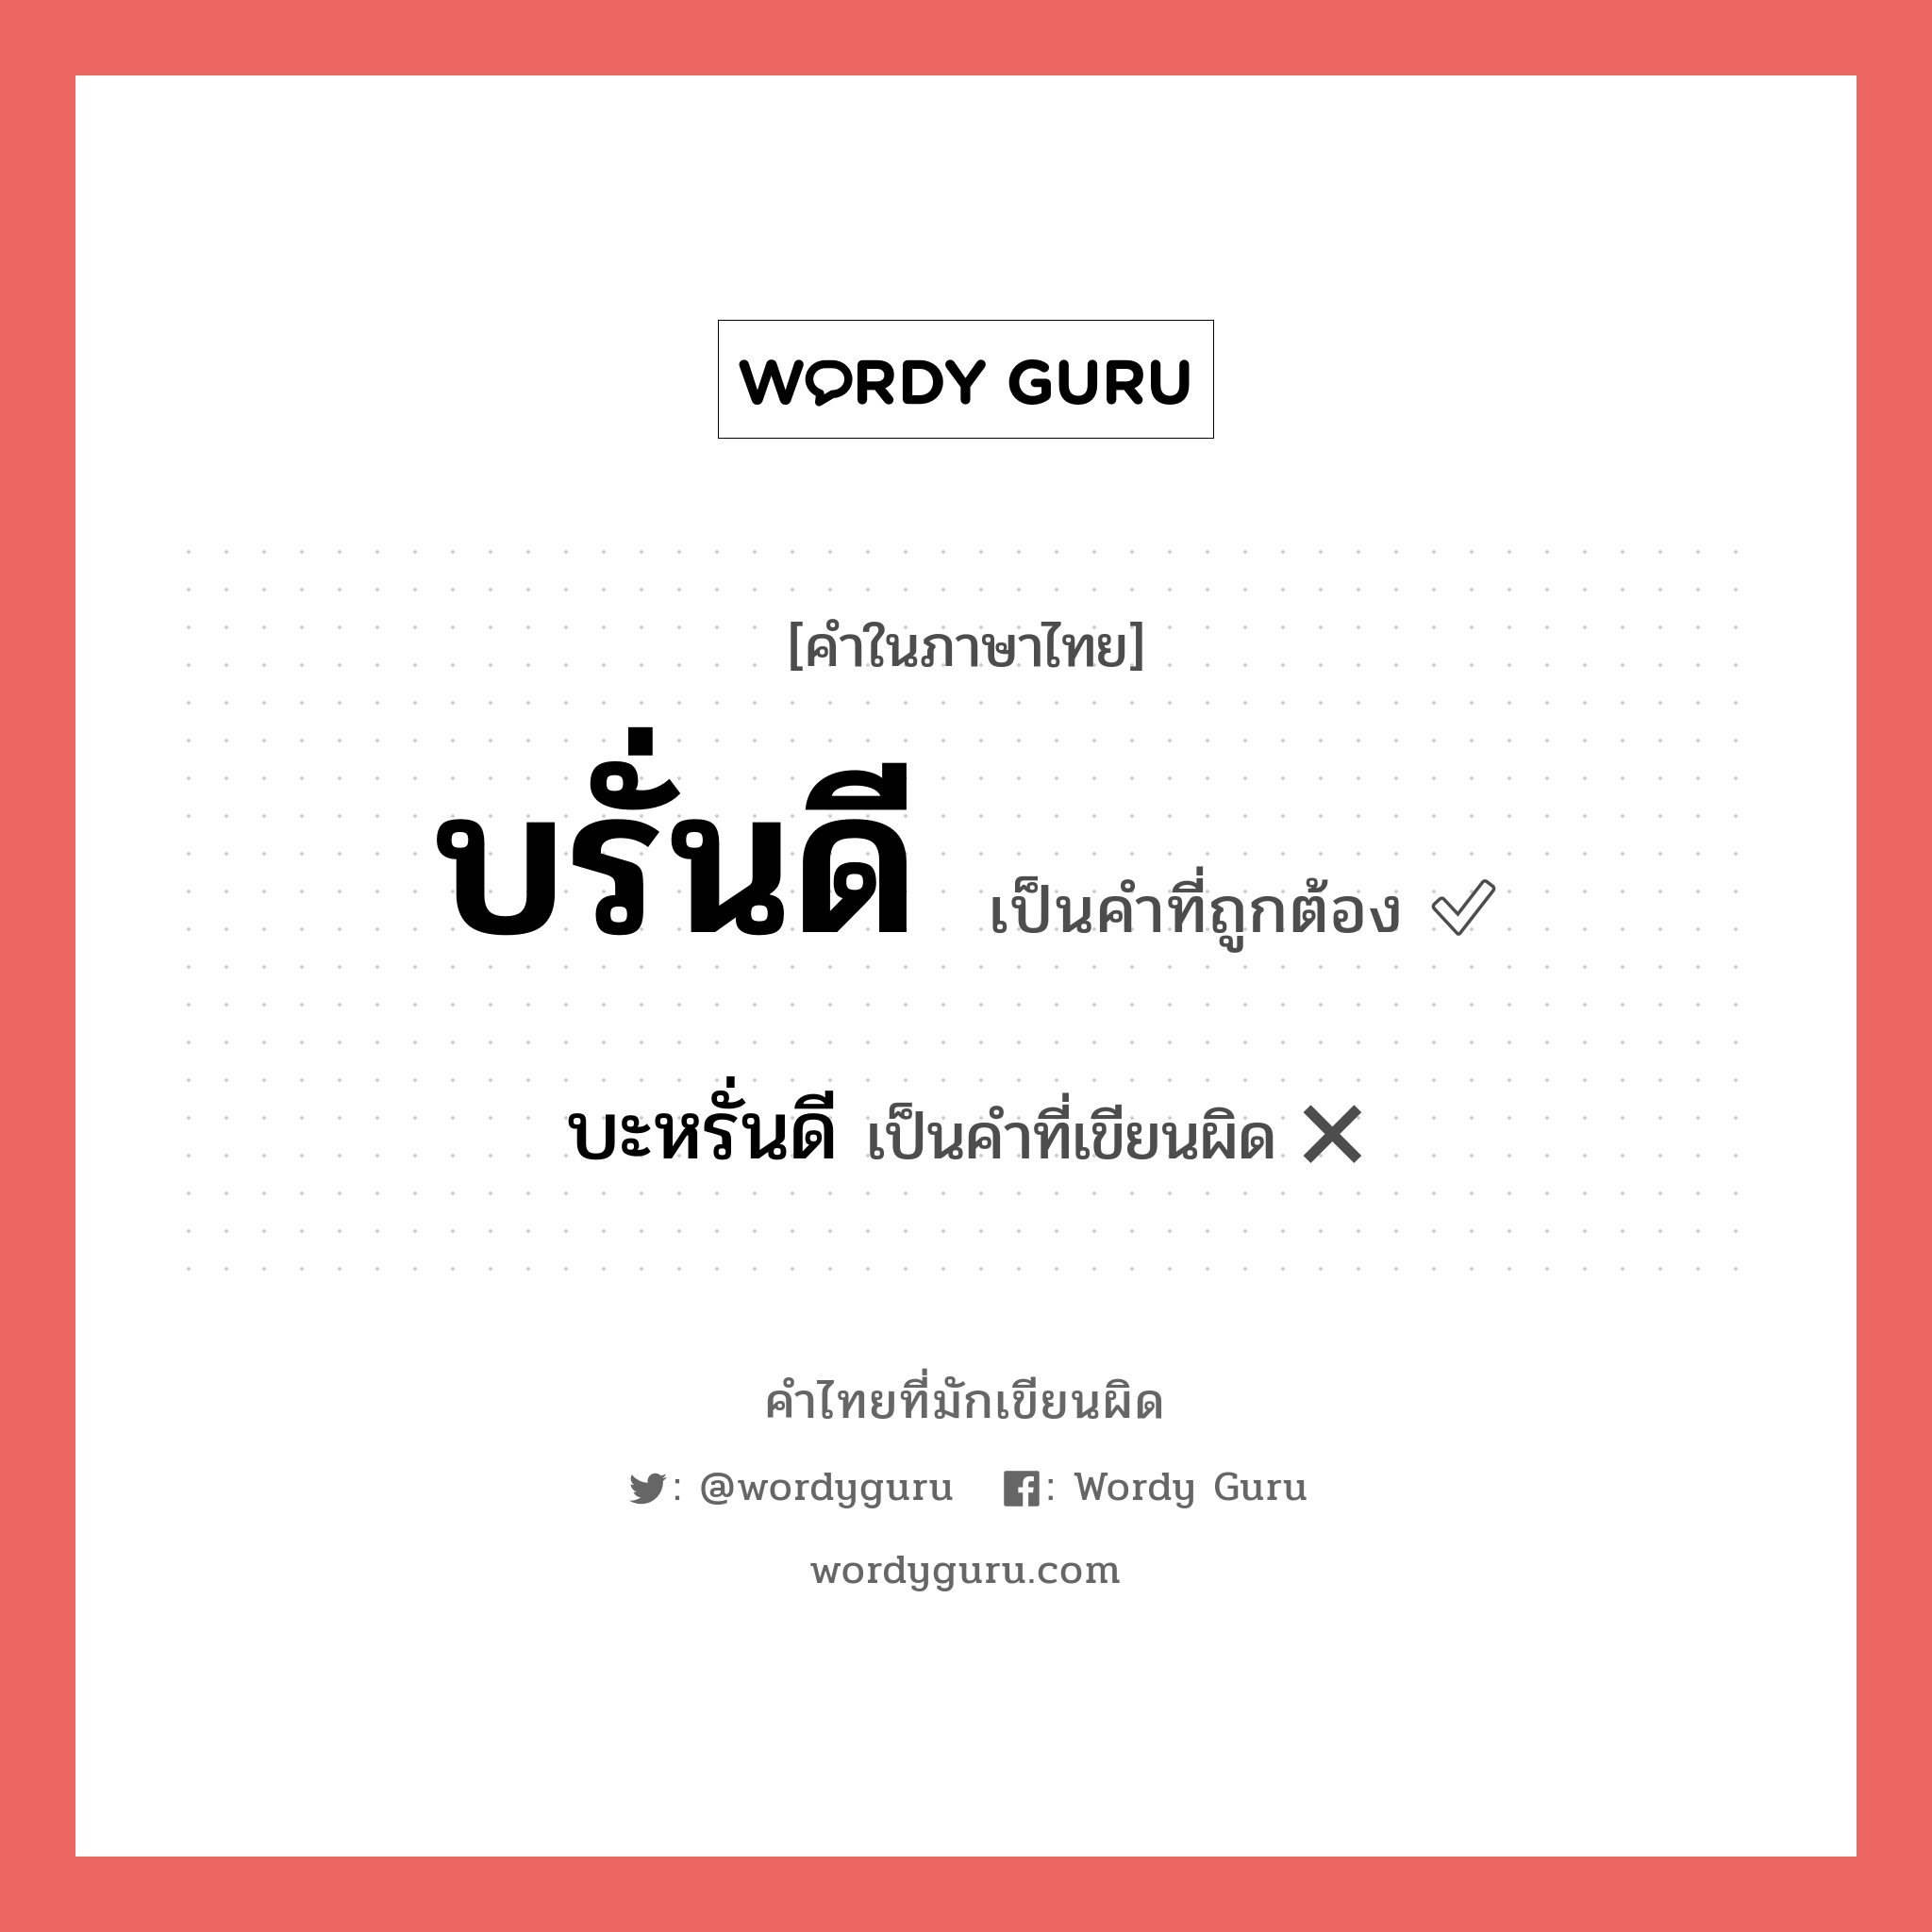 บรั่นดี หรือ บะหรั่นดี คำไหนเขียนถูก?, คำในภาษาไทยที่มักเขียนผิด บรั่นดี คำที่ผิด ❌ บะหรั่นดี